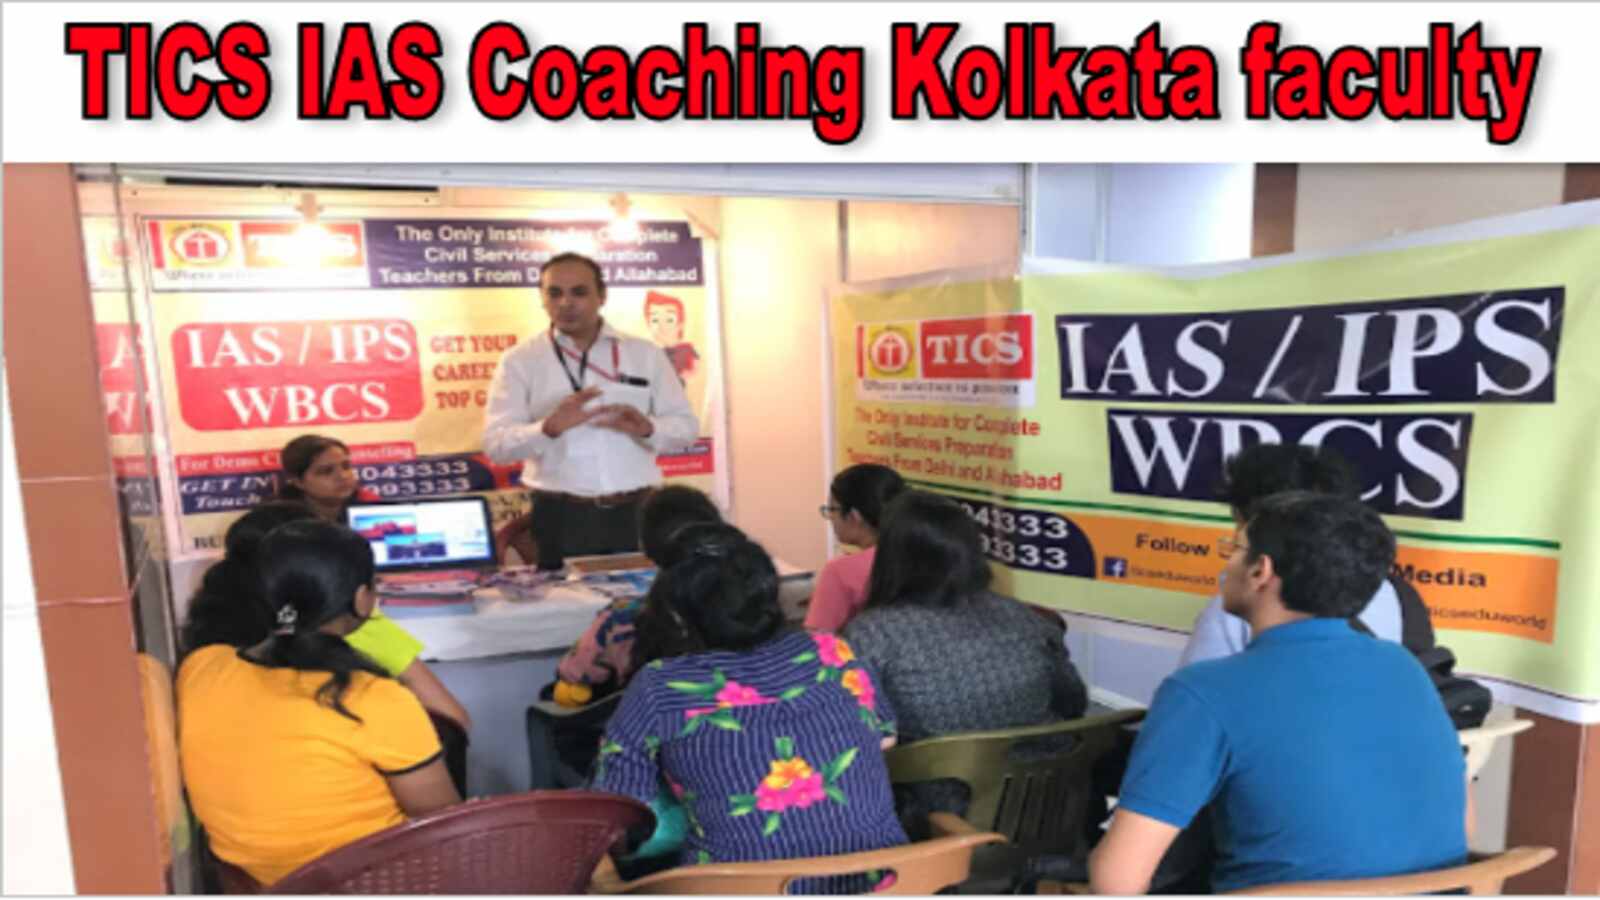 TICS IAS Coaching Kolkata Faculty